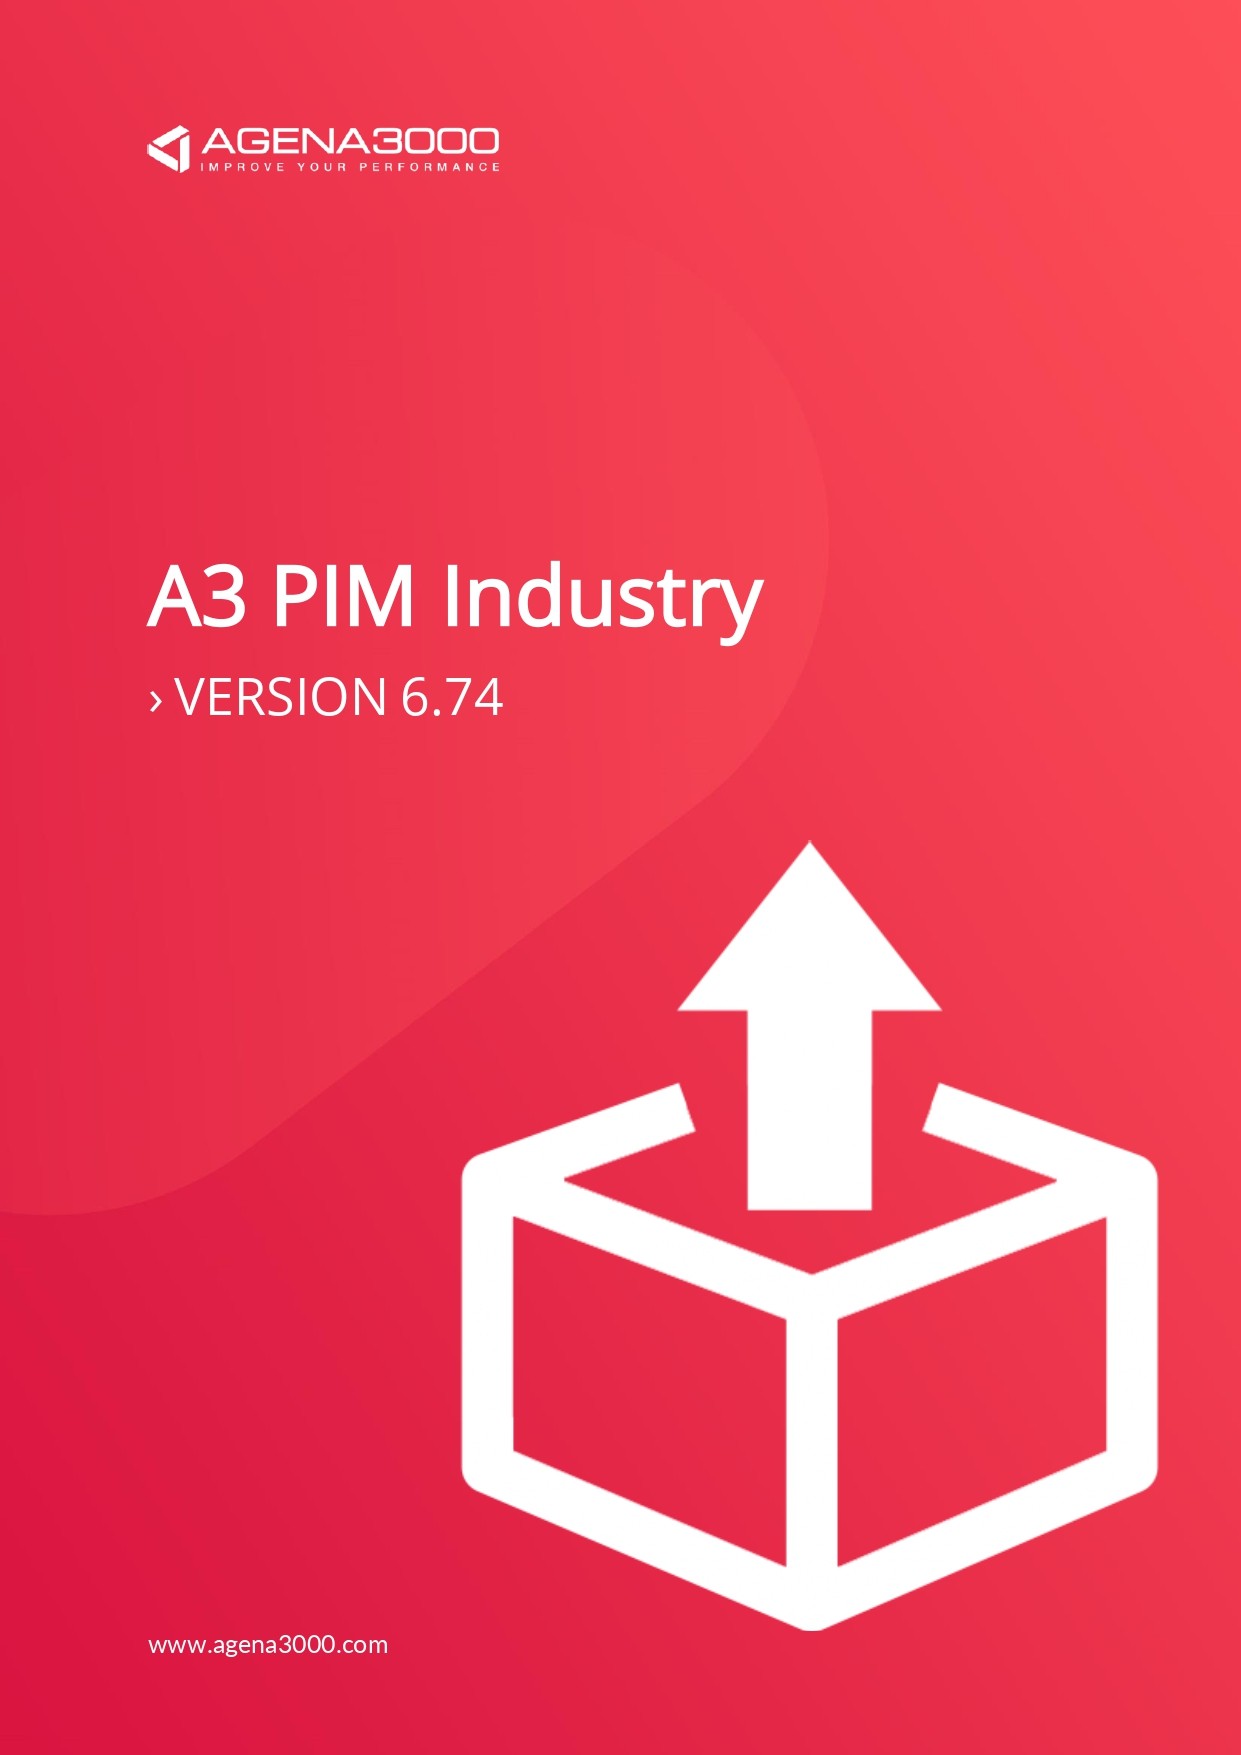 Release-Note-Pim-Industry-0001.jpg